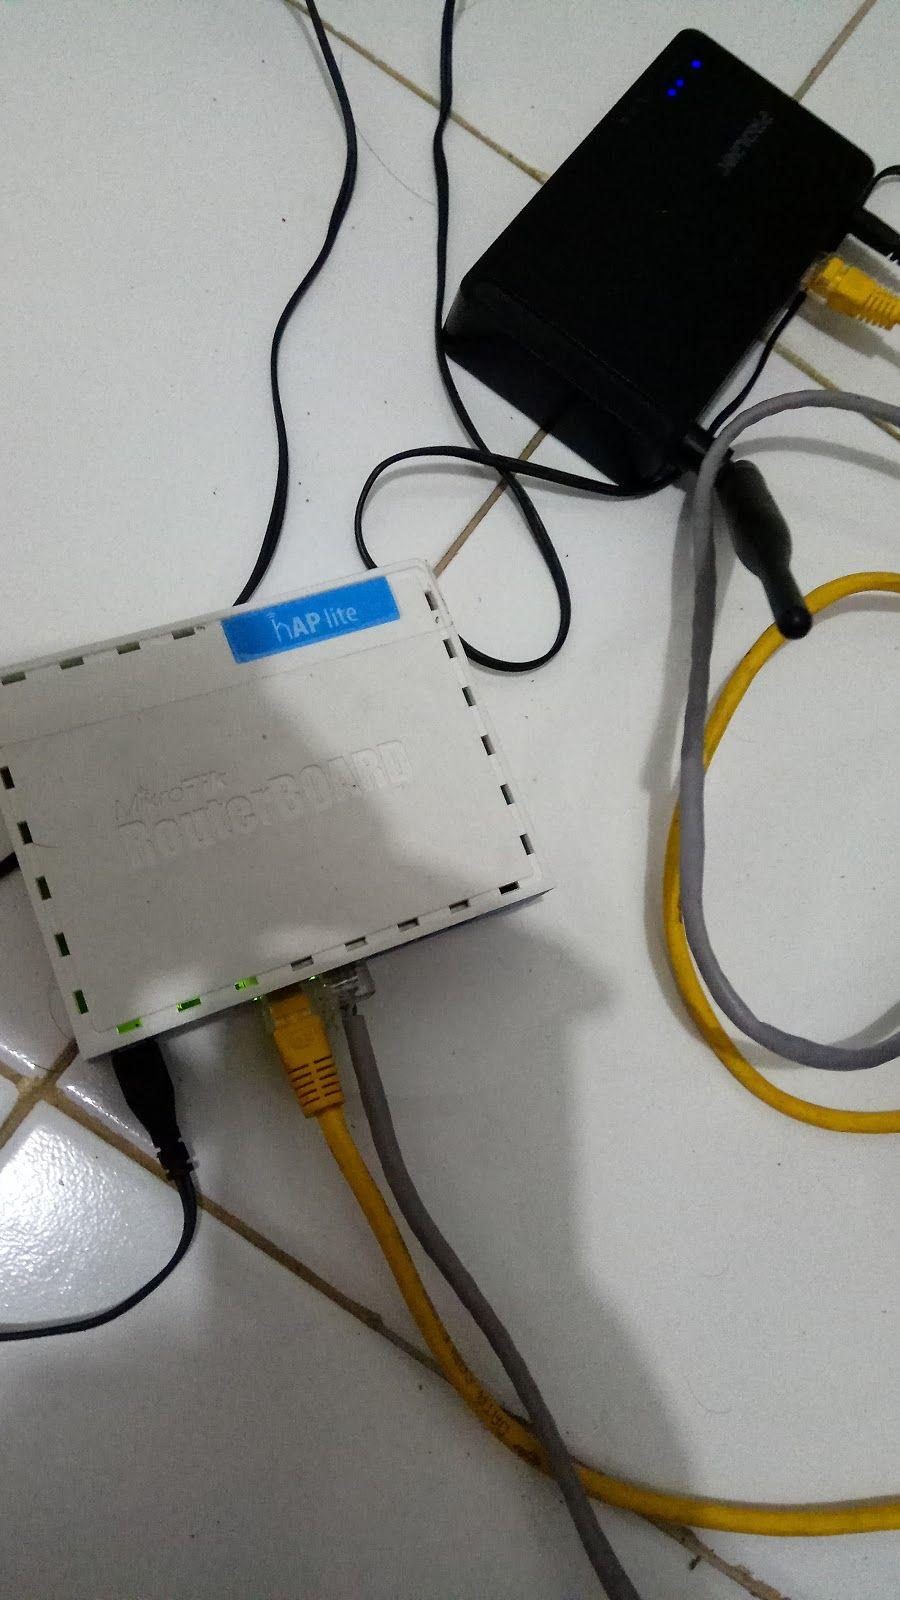 Test fisik dengan menggunakan router mikrotik RB 941-2nD hap lite yang support radius, catatan prolink